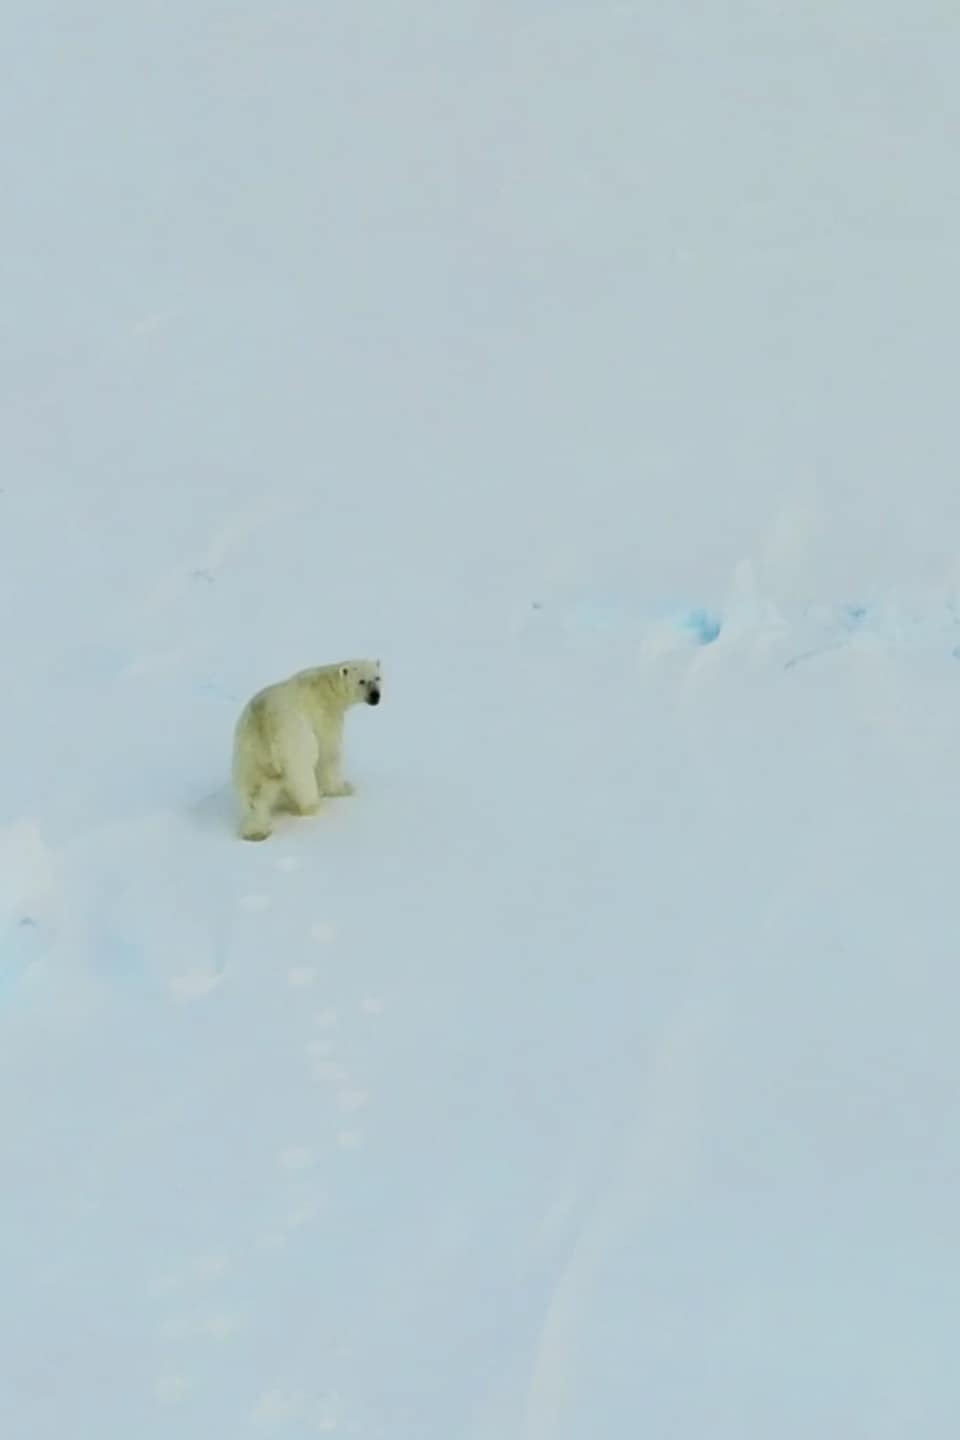 Un ours polaire regarde le drone qui vole au-dessus de lui